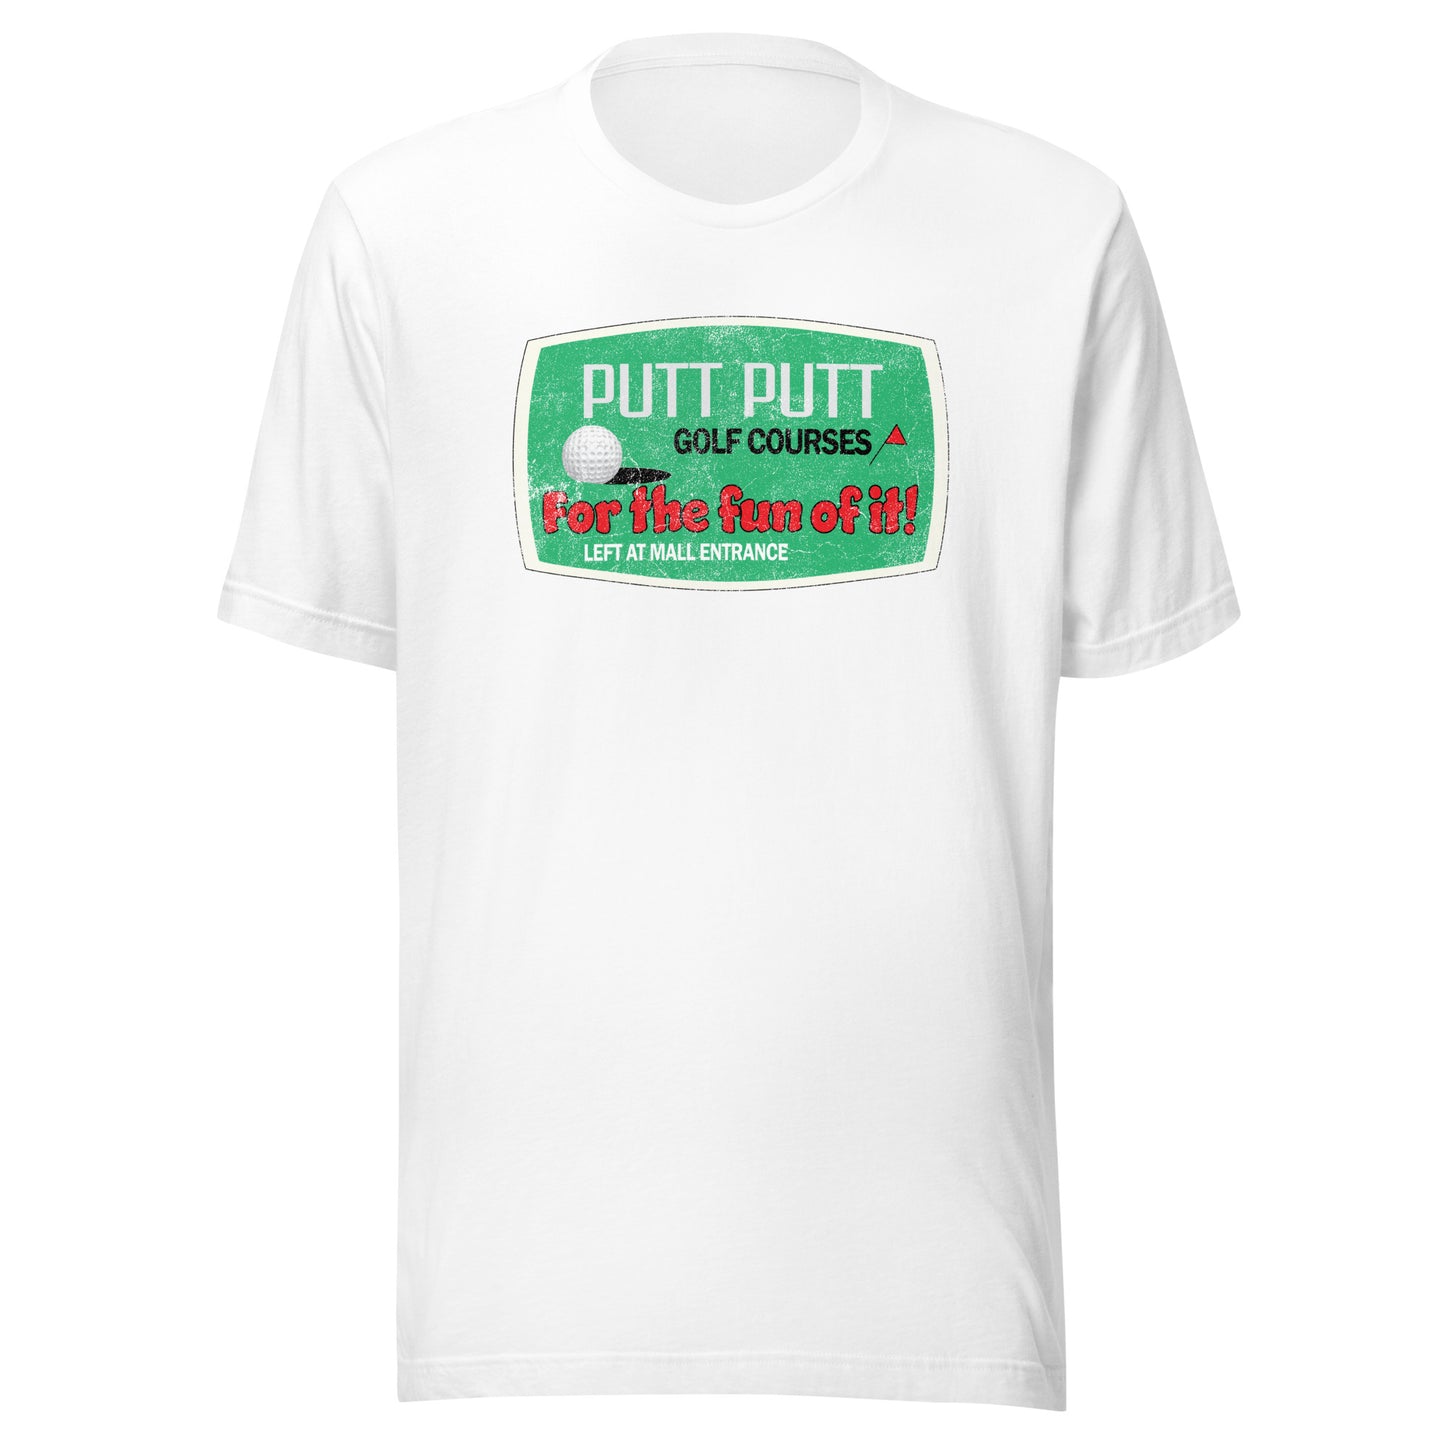 Putt Putt T-Shirt - Brockton, MA | Retro Mini Golf Vintage Tee